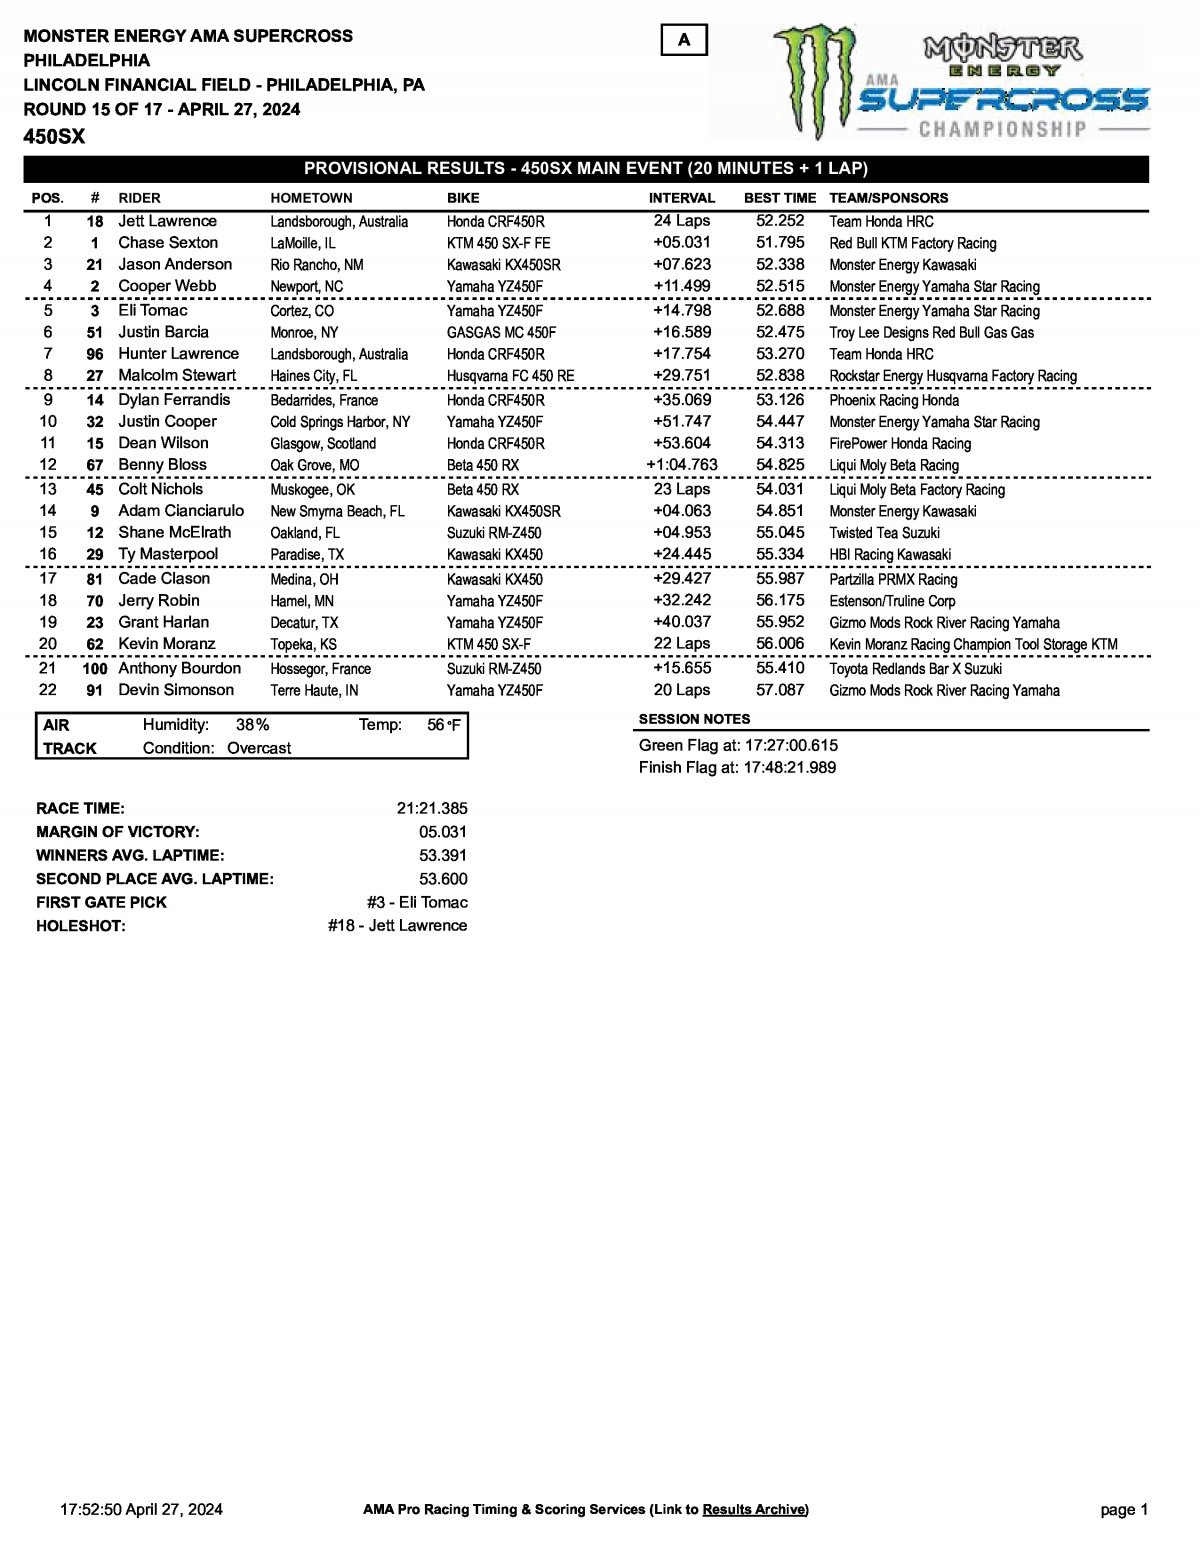 Результаты AMA Supercross 15 этап 450SX, Филадельфия - Main Event (27/04/2024)